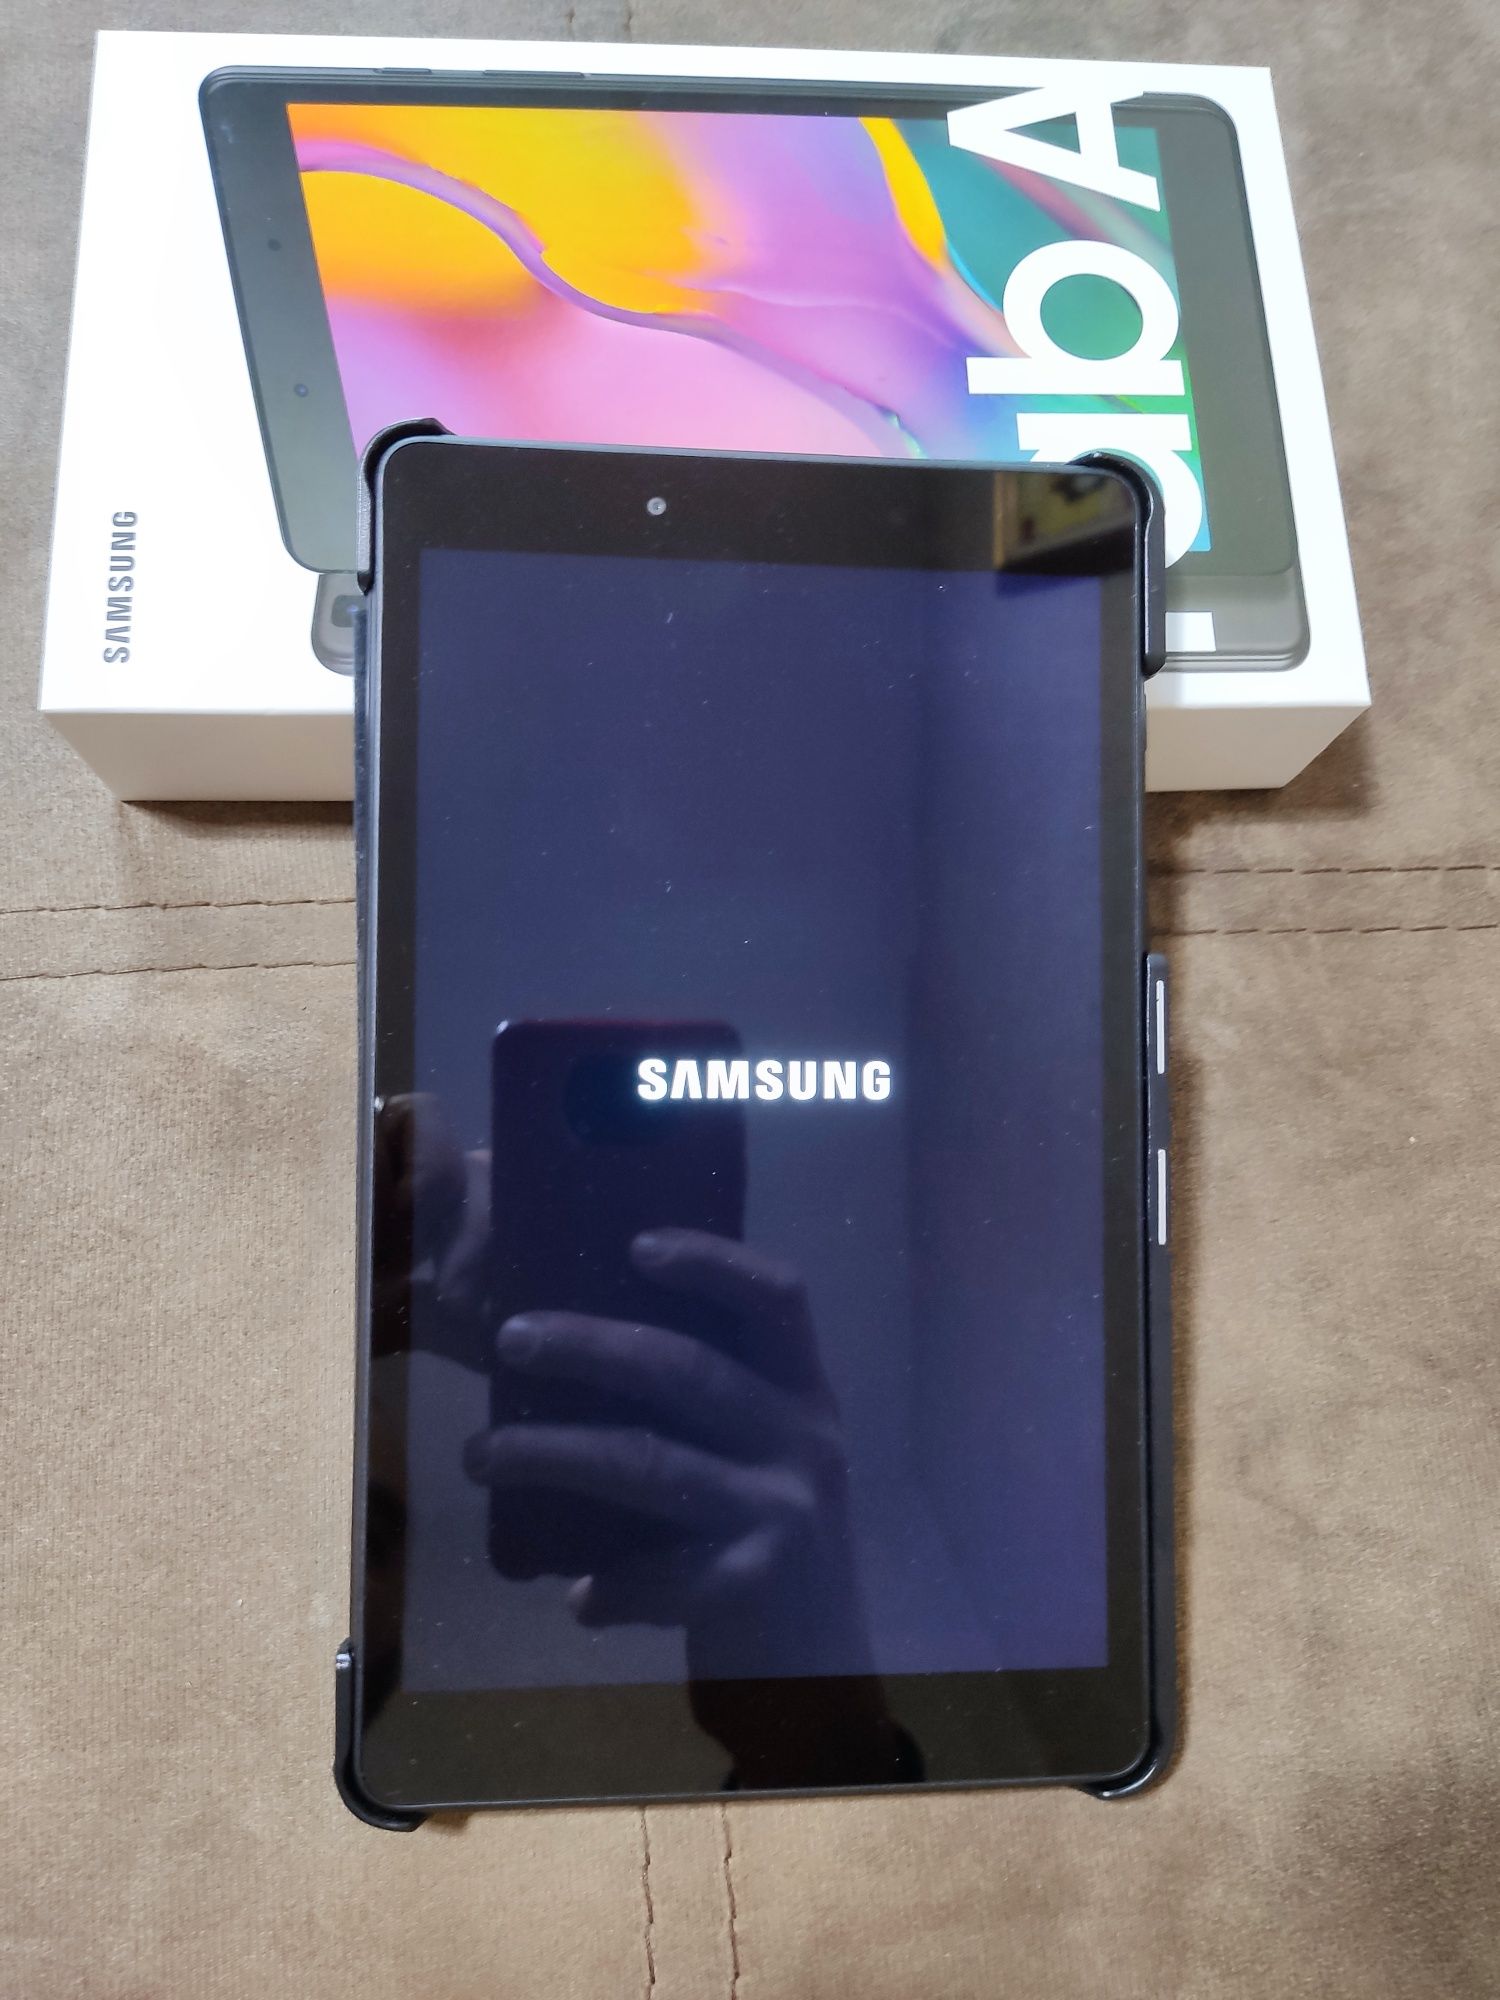 Samsung Galaxy Tab A 32 GB, wi-fi